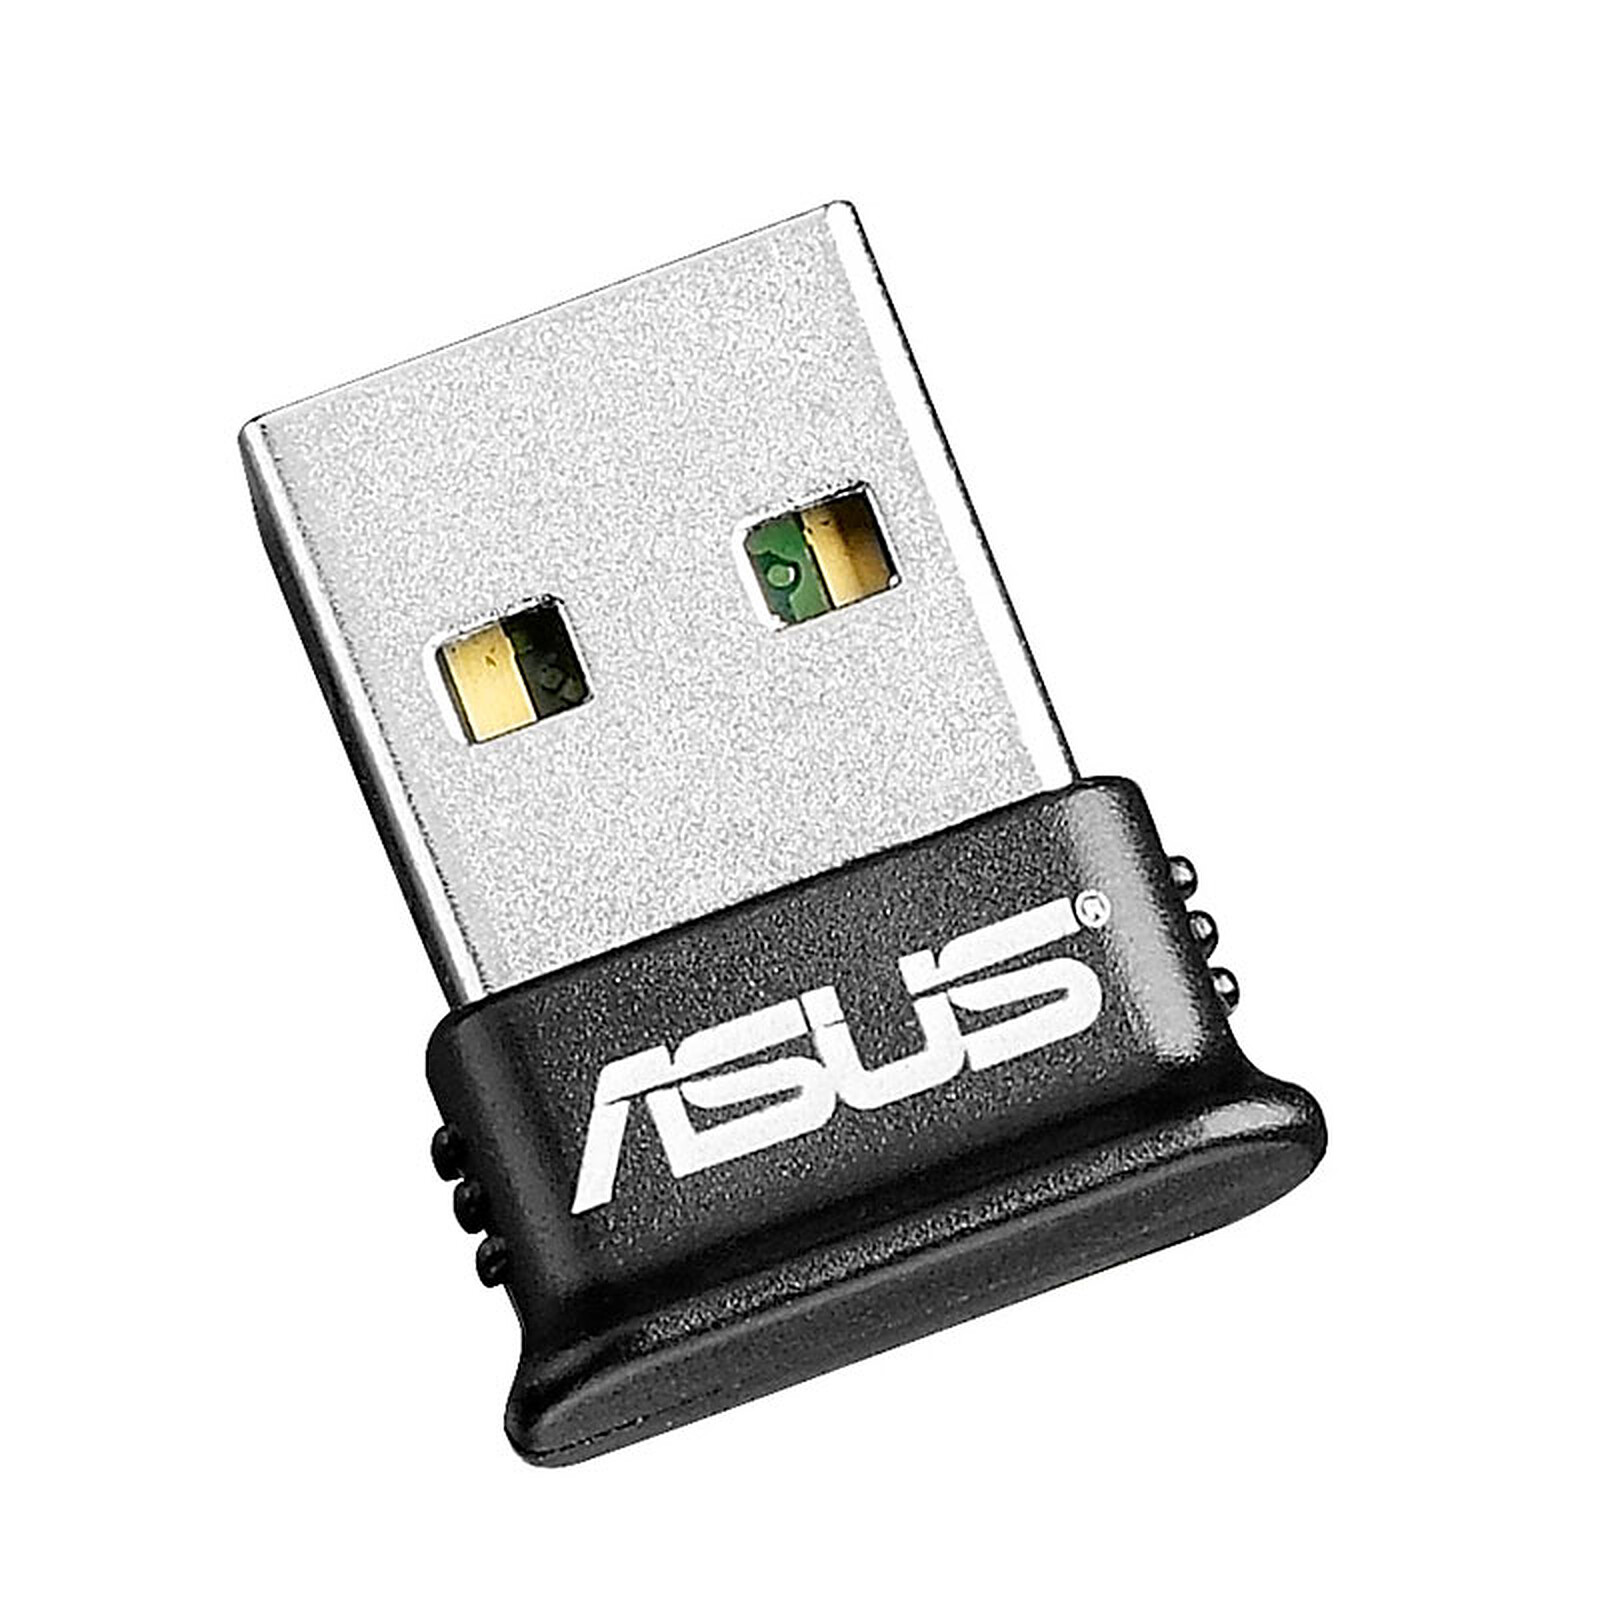 ASUS USB-BT400 - Connecteur bluetooth - Garantie 3 ans LDLC